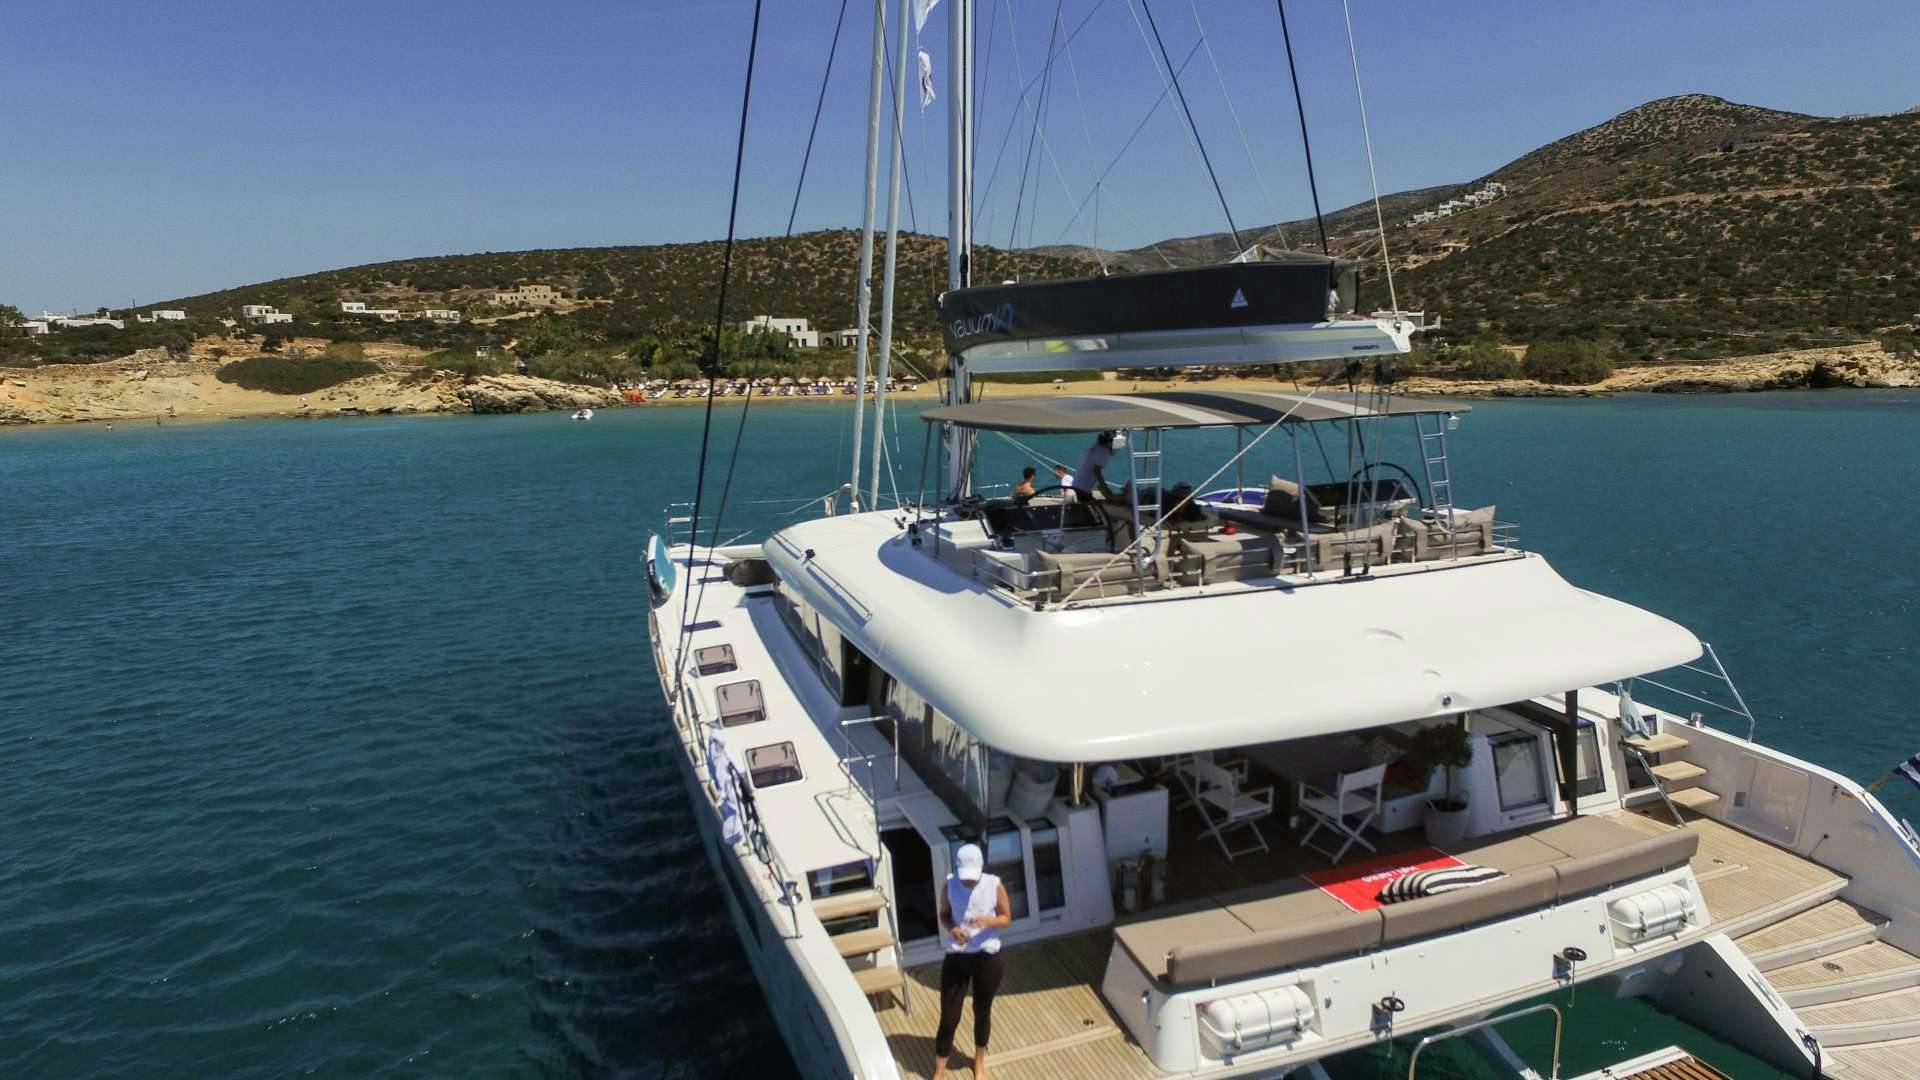 valium62 - Yacht Charter Puntone di Scarlino & Boat hire in Greece 1